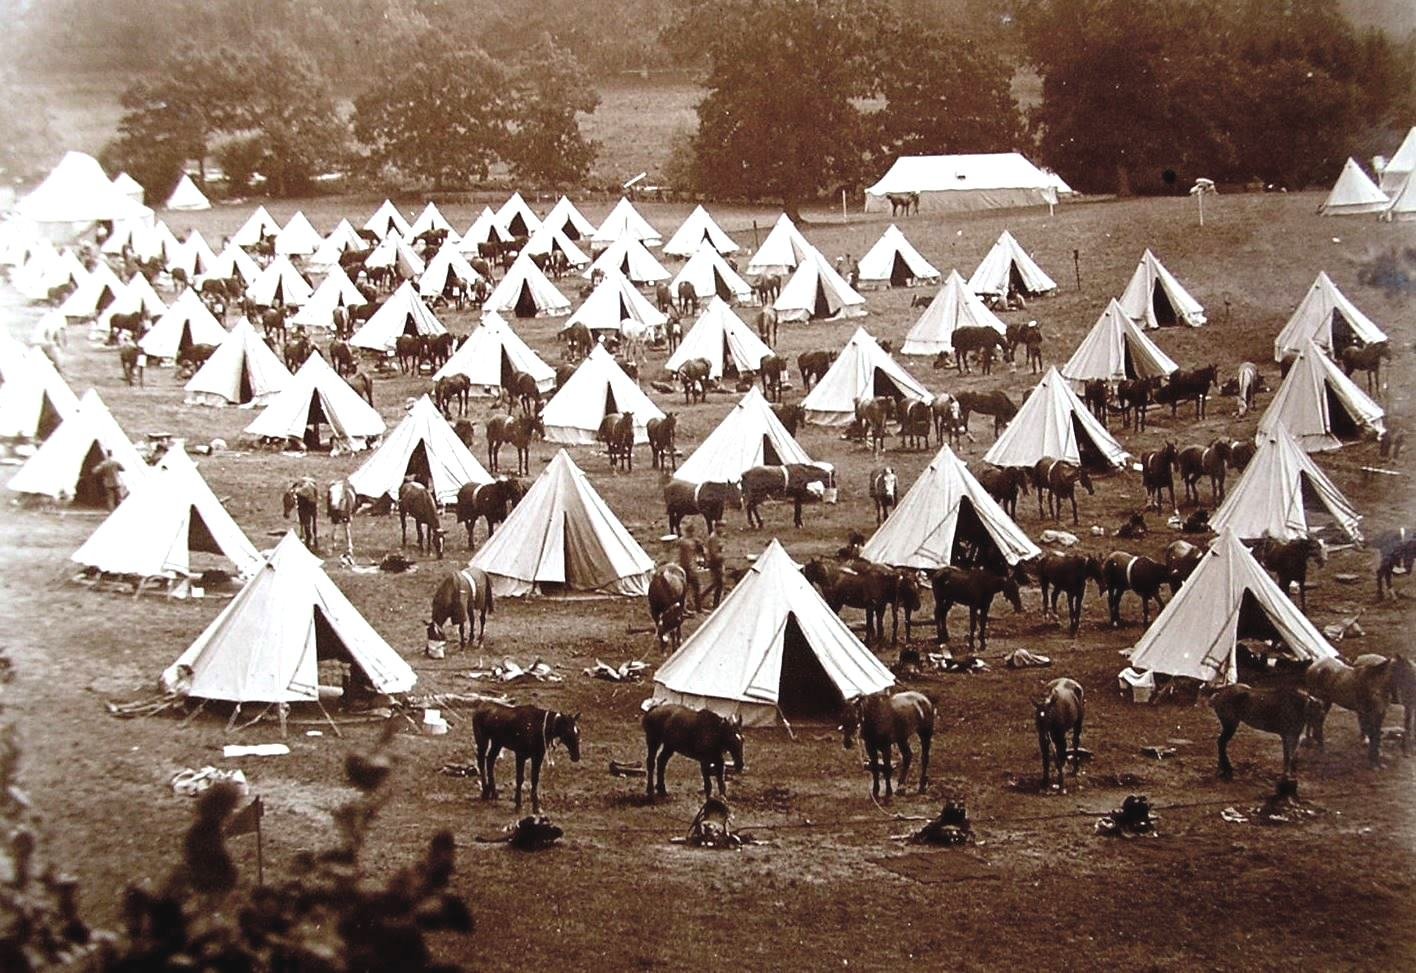 Latimer Camp in 1903